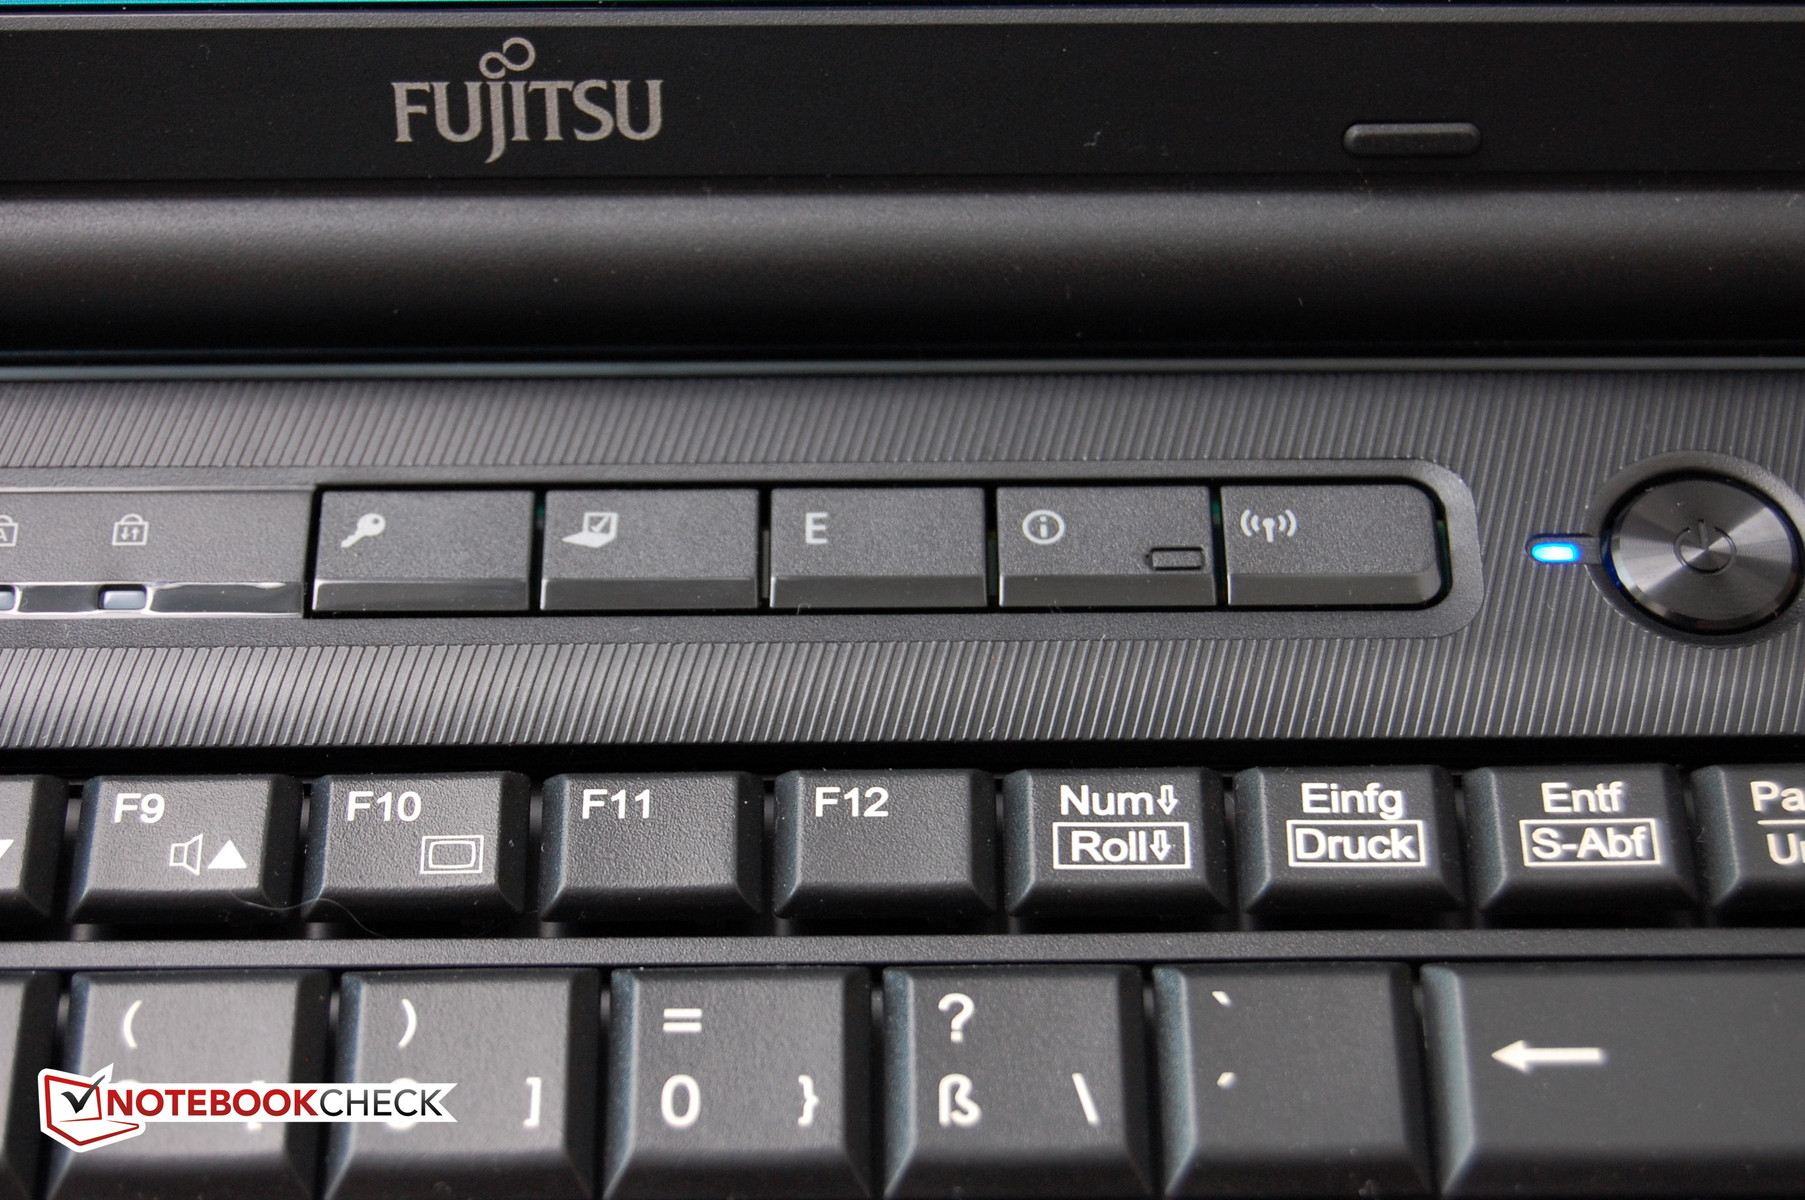 Ноутбук 15.6 Fujitsu Lifebook Ah532 Отзывы